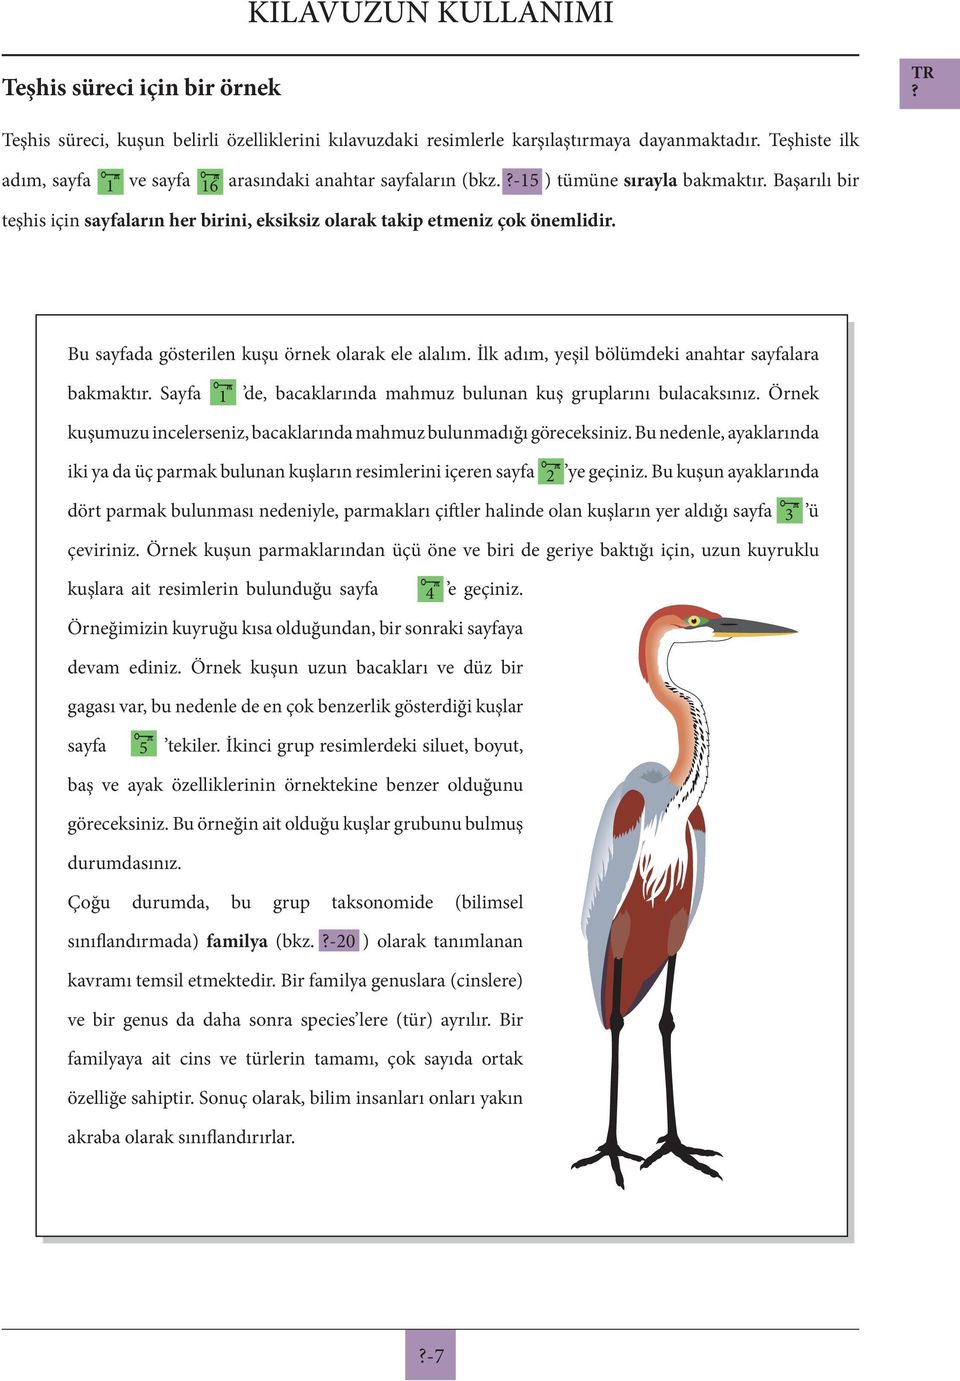 Bu sayfada gösterilen kuşu örnek olarak ele alalım. İlk adım, yeşil bölümdeki anahtar sayfalara bakmaktır. Sayfa 1 de, bacaklarında mahmuz bulunan kuş gruplarını bulacaksınız.